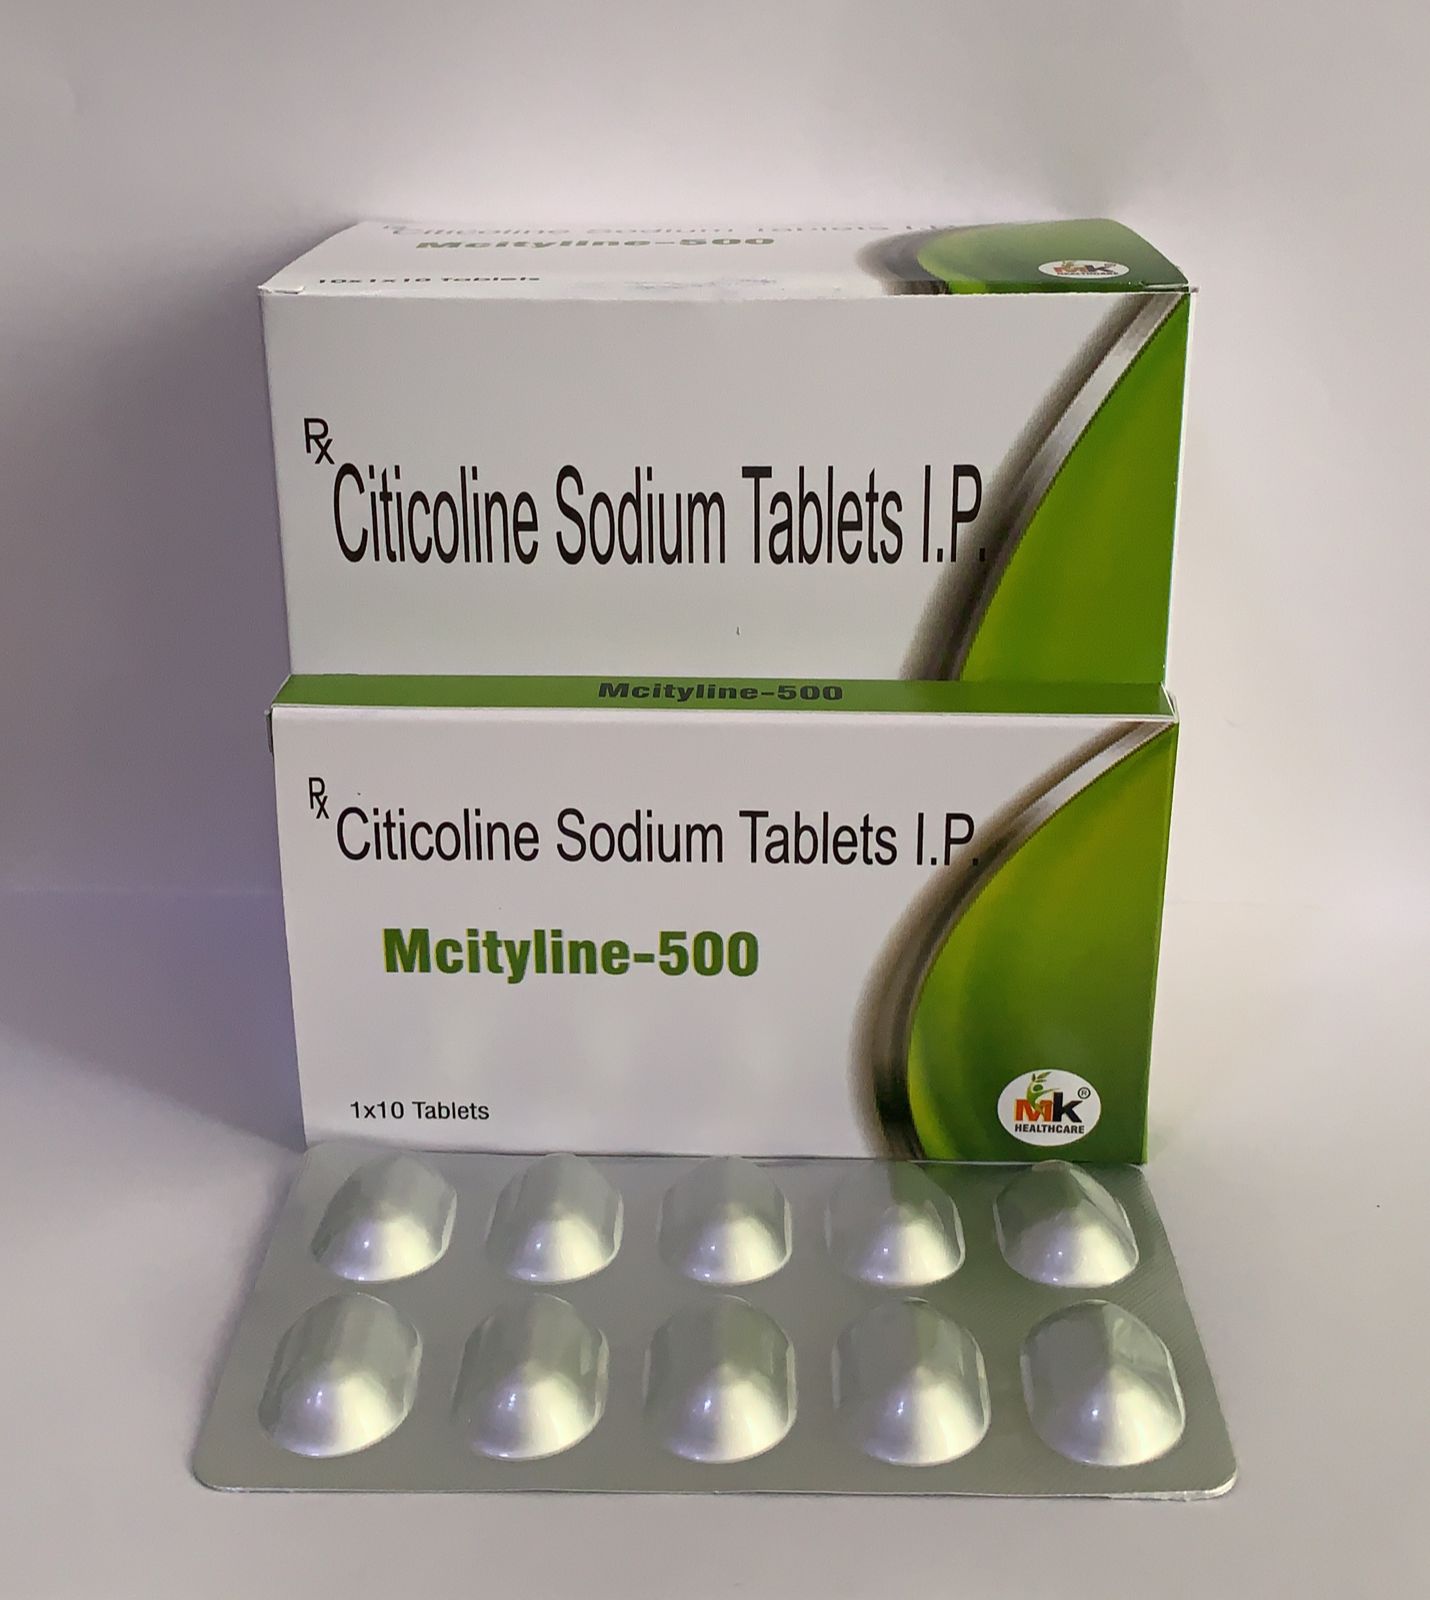 MCITYLINE-500